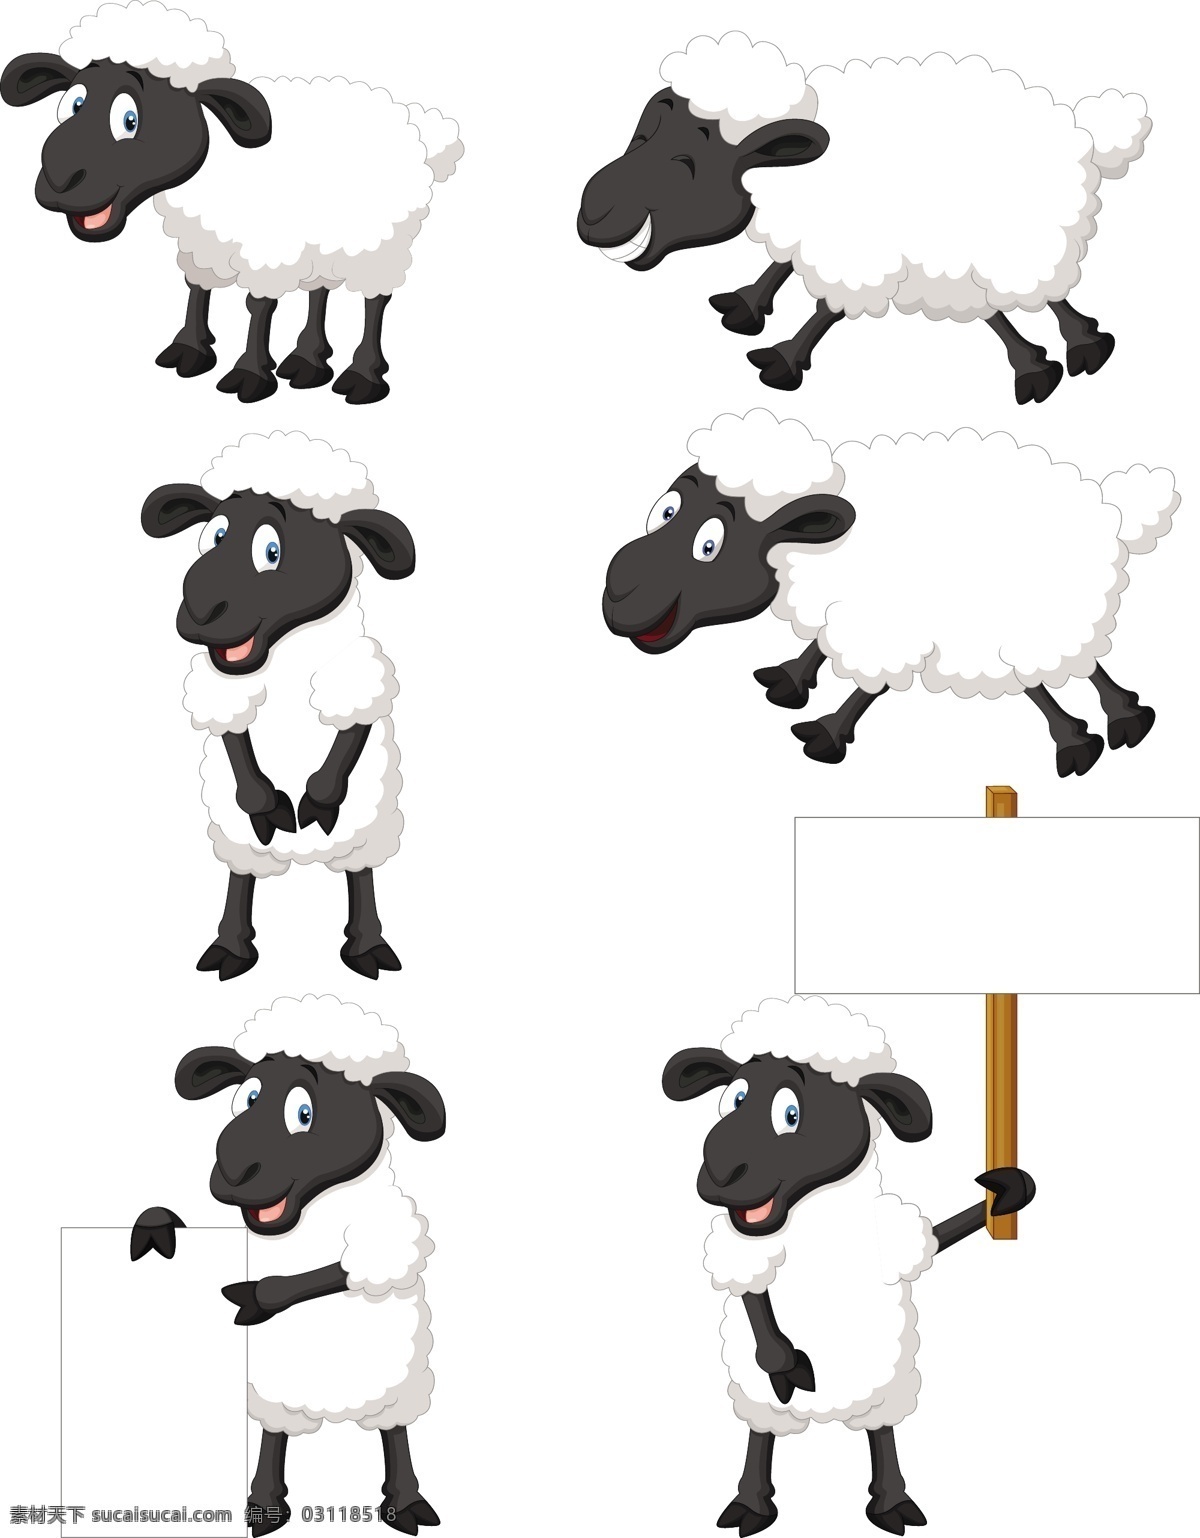 卡通小绵羊 卡通小羊 卡通羊 2015 羊年素材 卡通动物 卡通形象 可爱动物 拟人化 矢量动物 动漫动画